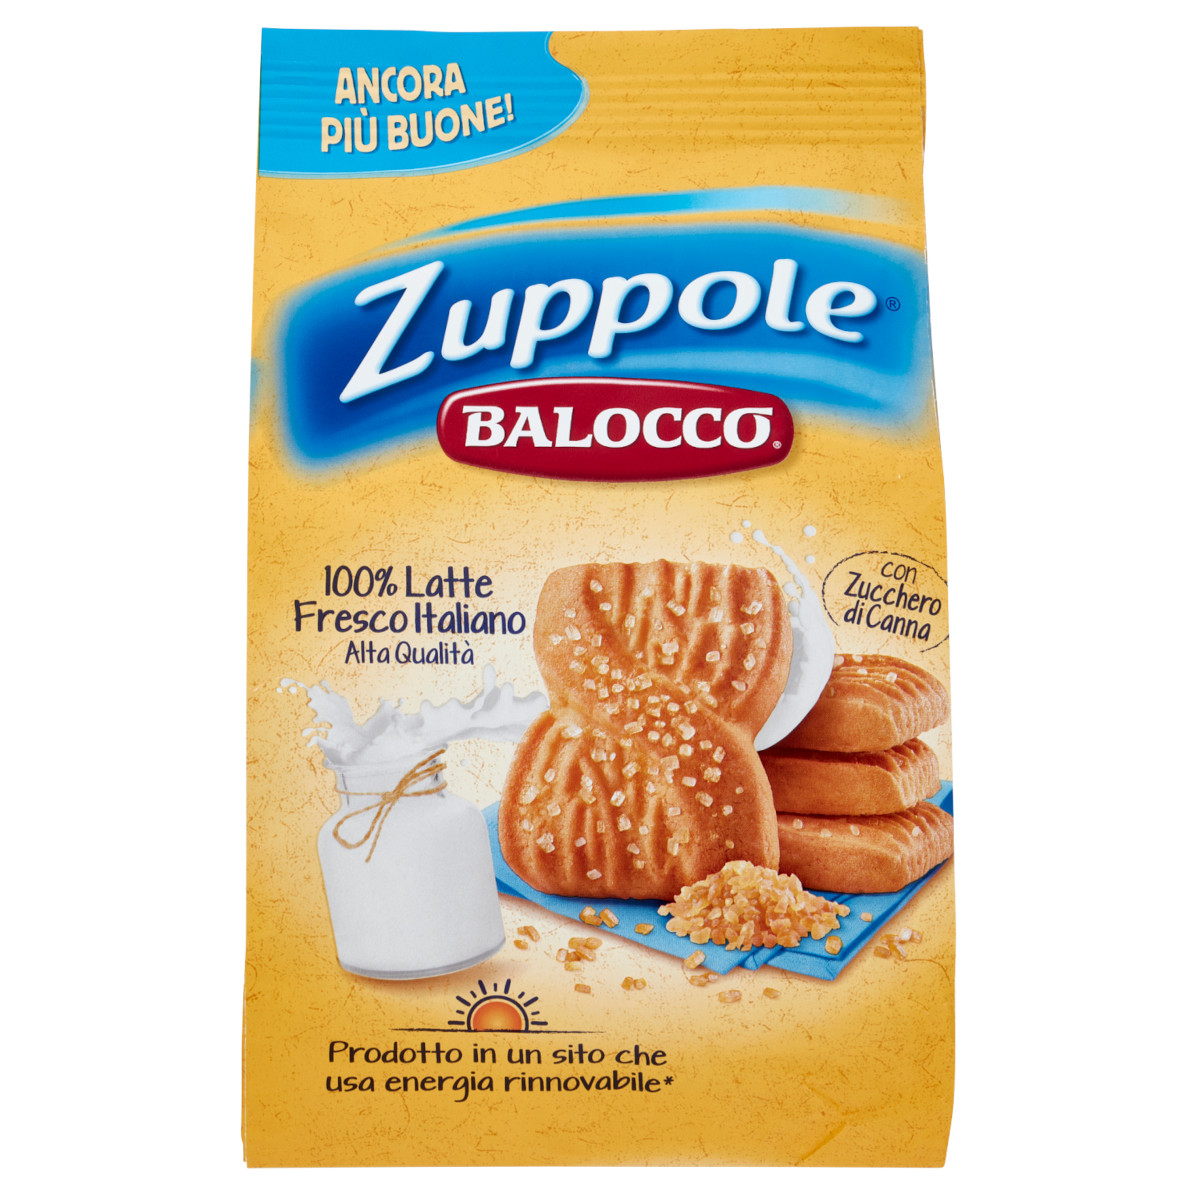 Balocco zuppole-1